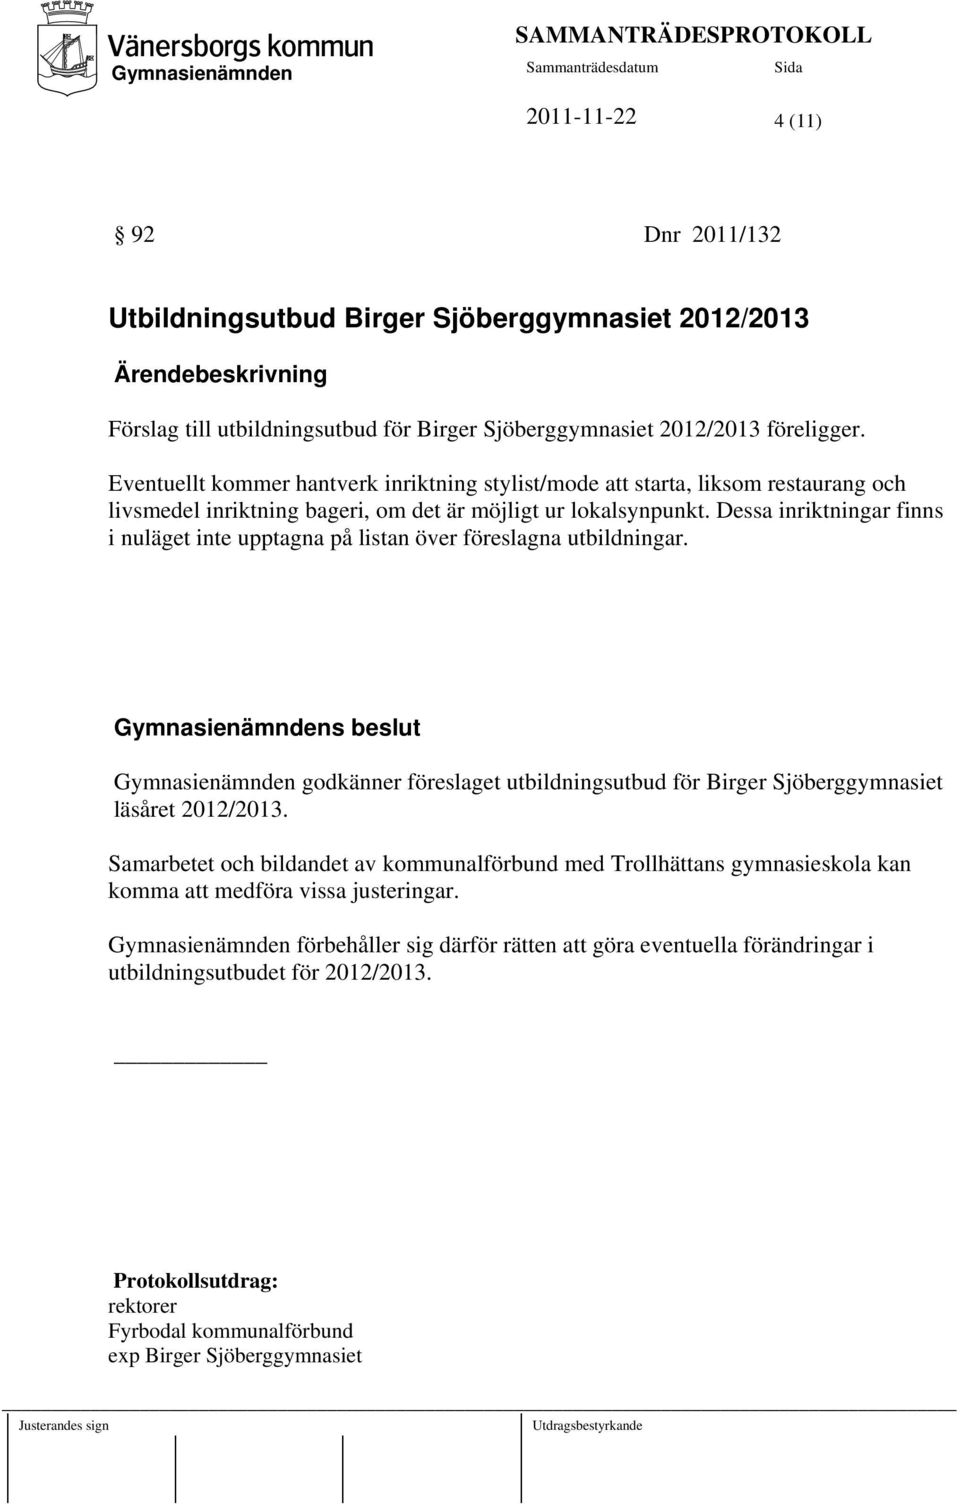 Dessa inriktningar finns i nuläget inte upptagna på listan över föreslagna utbildningar. s beslut godkänner föreslaget utbildningsutbud för Birger Sjöberggymnasiet läsåret 2012/2013.